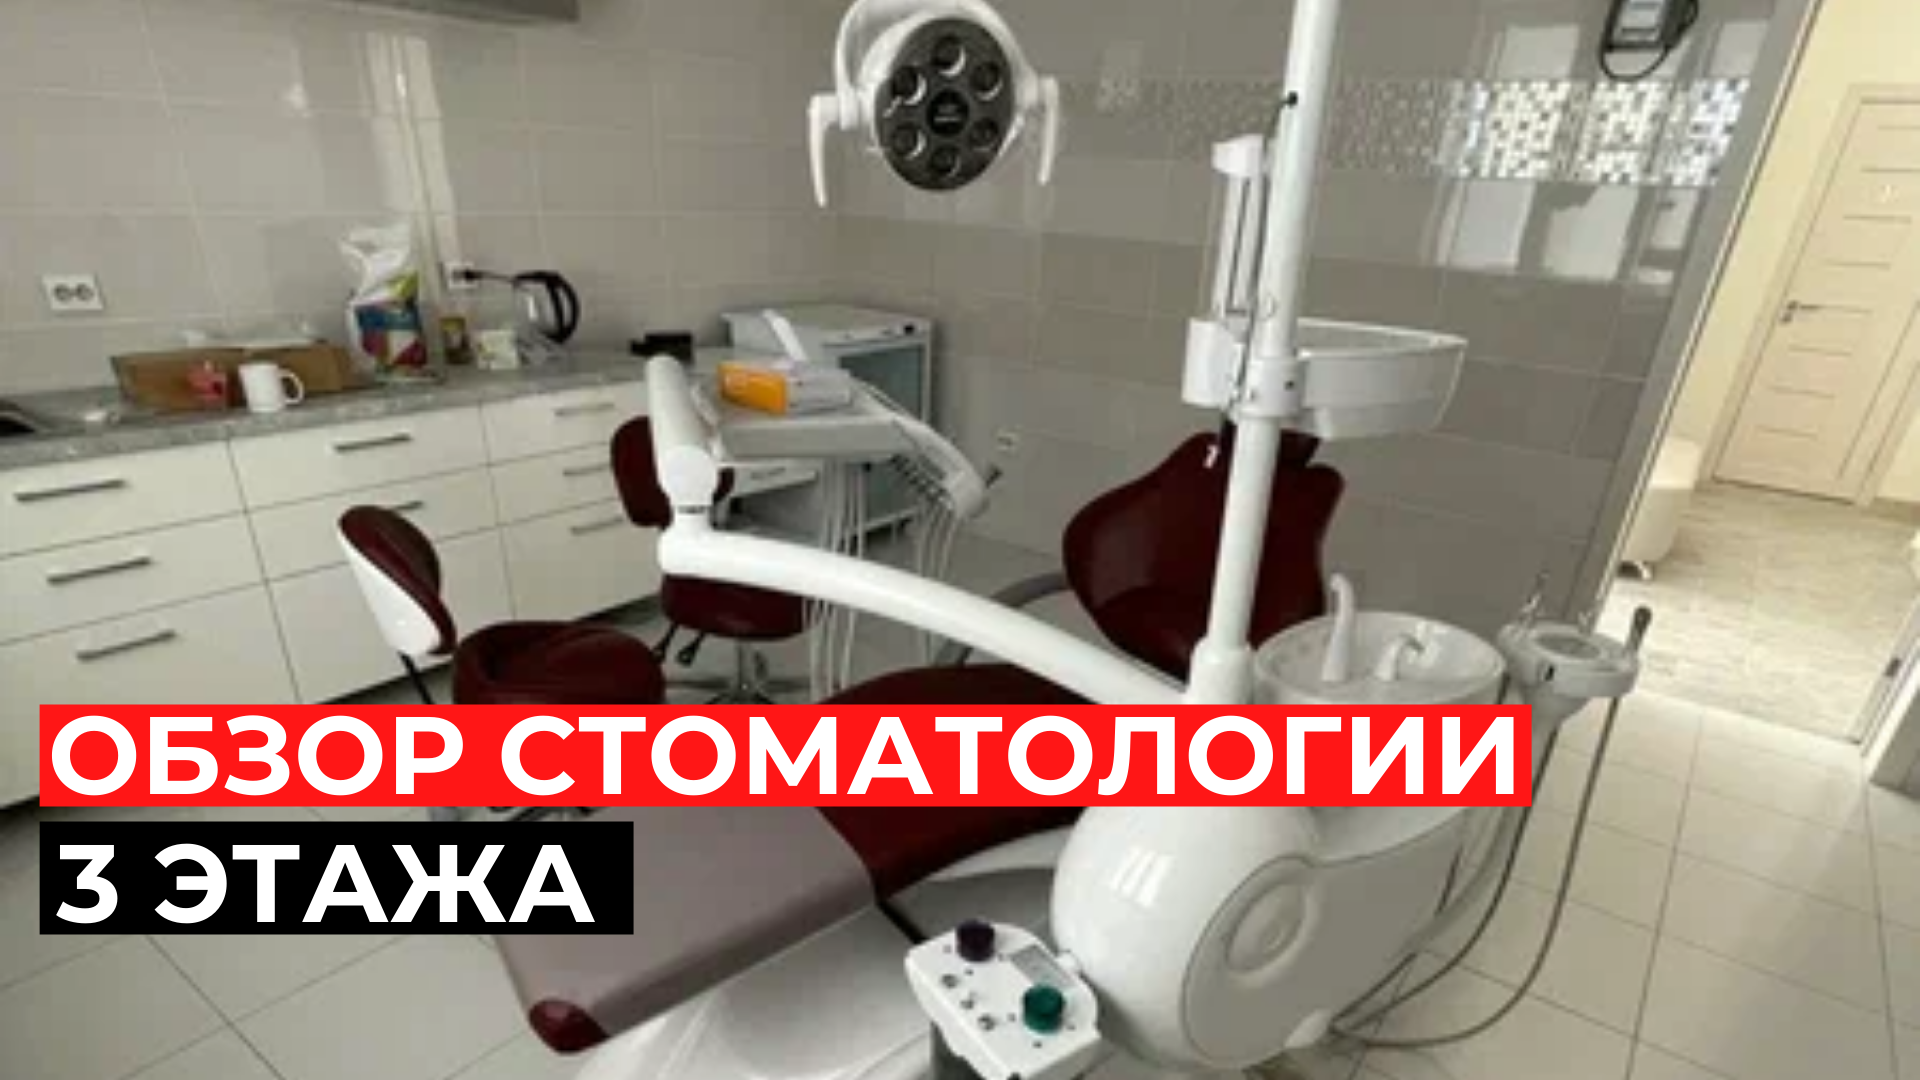 Обзор стоматологии на 3 этажа в г. Курск